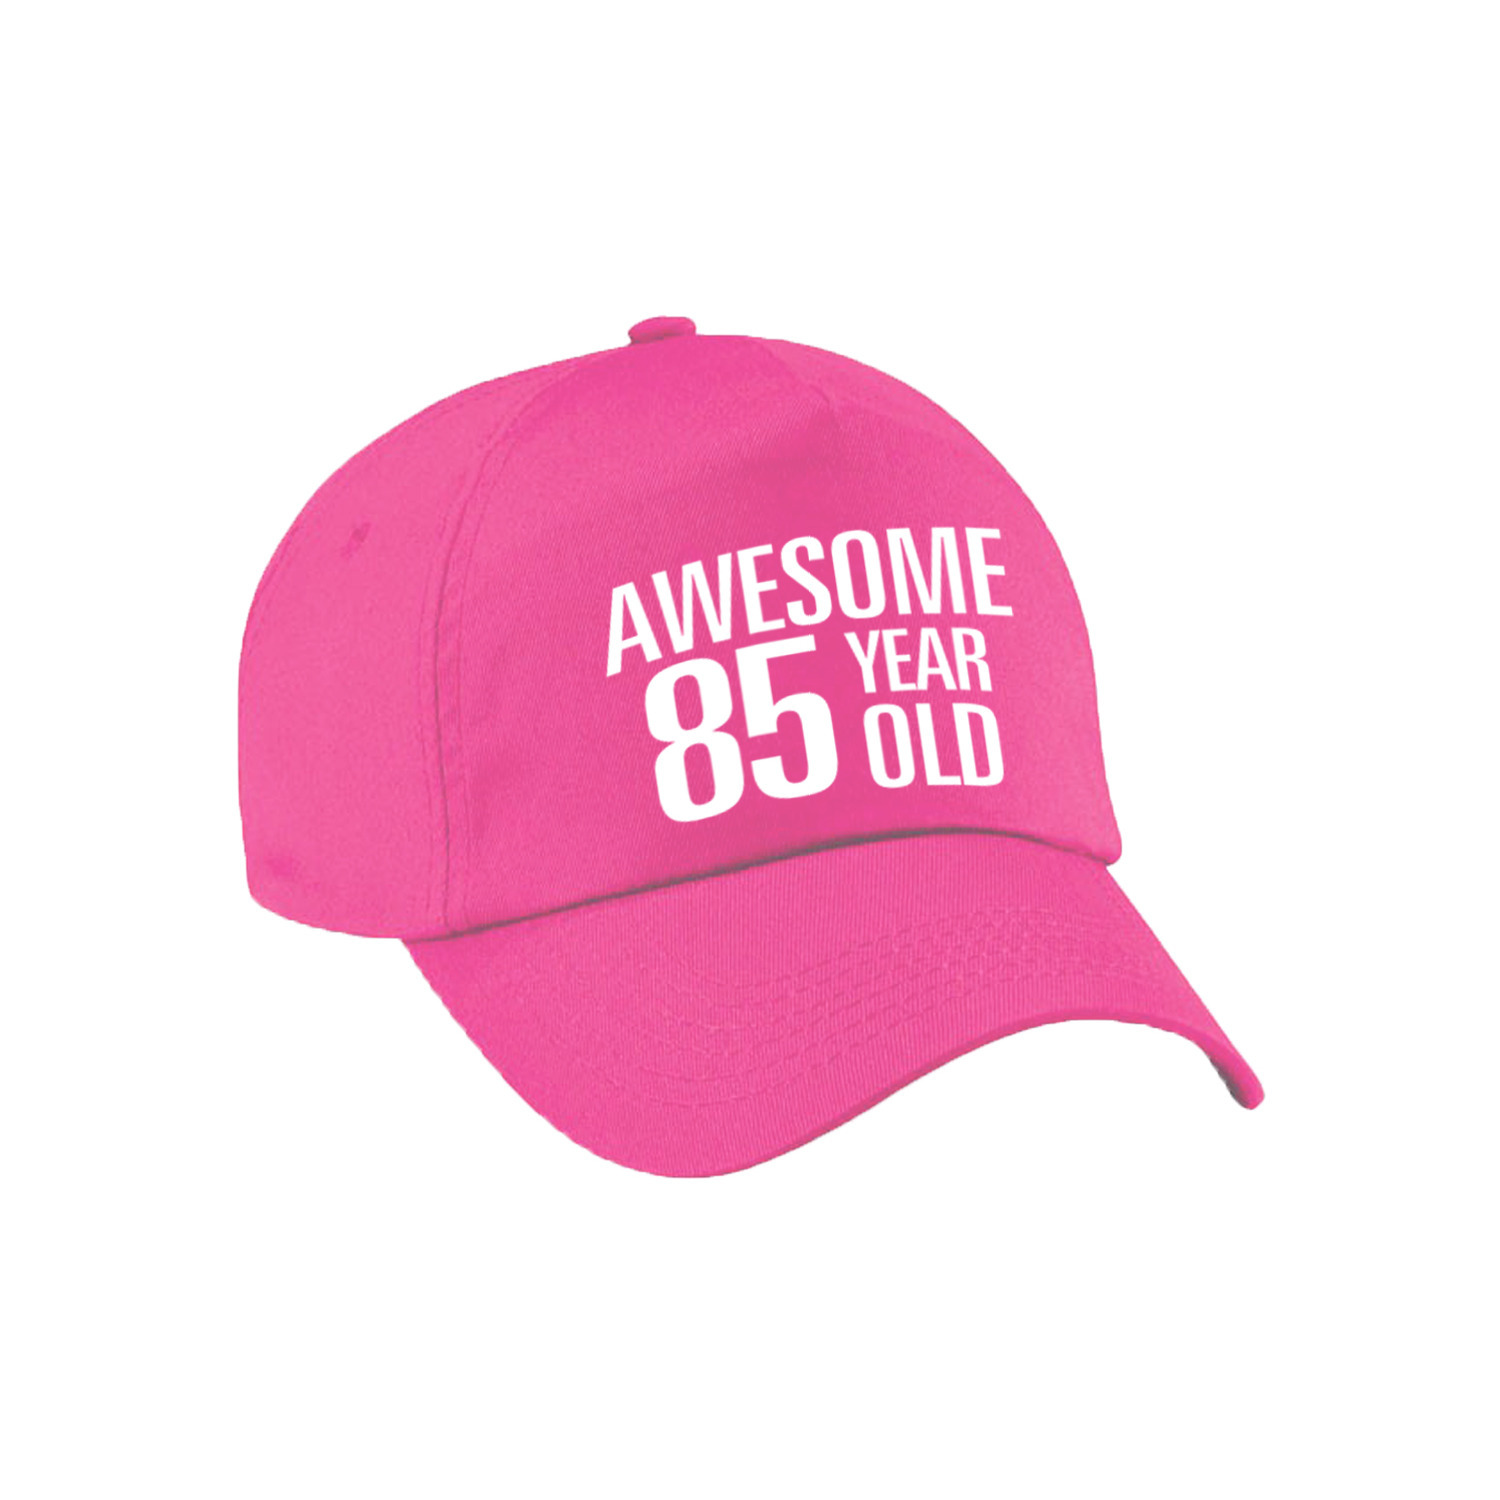 Awesome 85 year old verjaardag pet - cap roze voor dames en heren